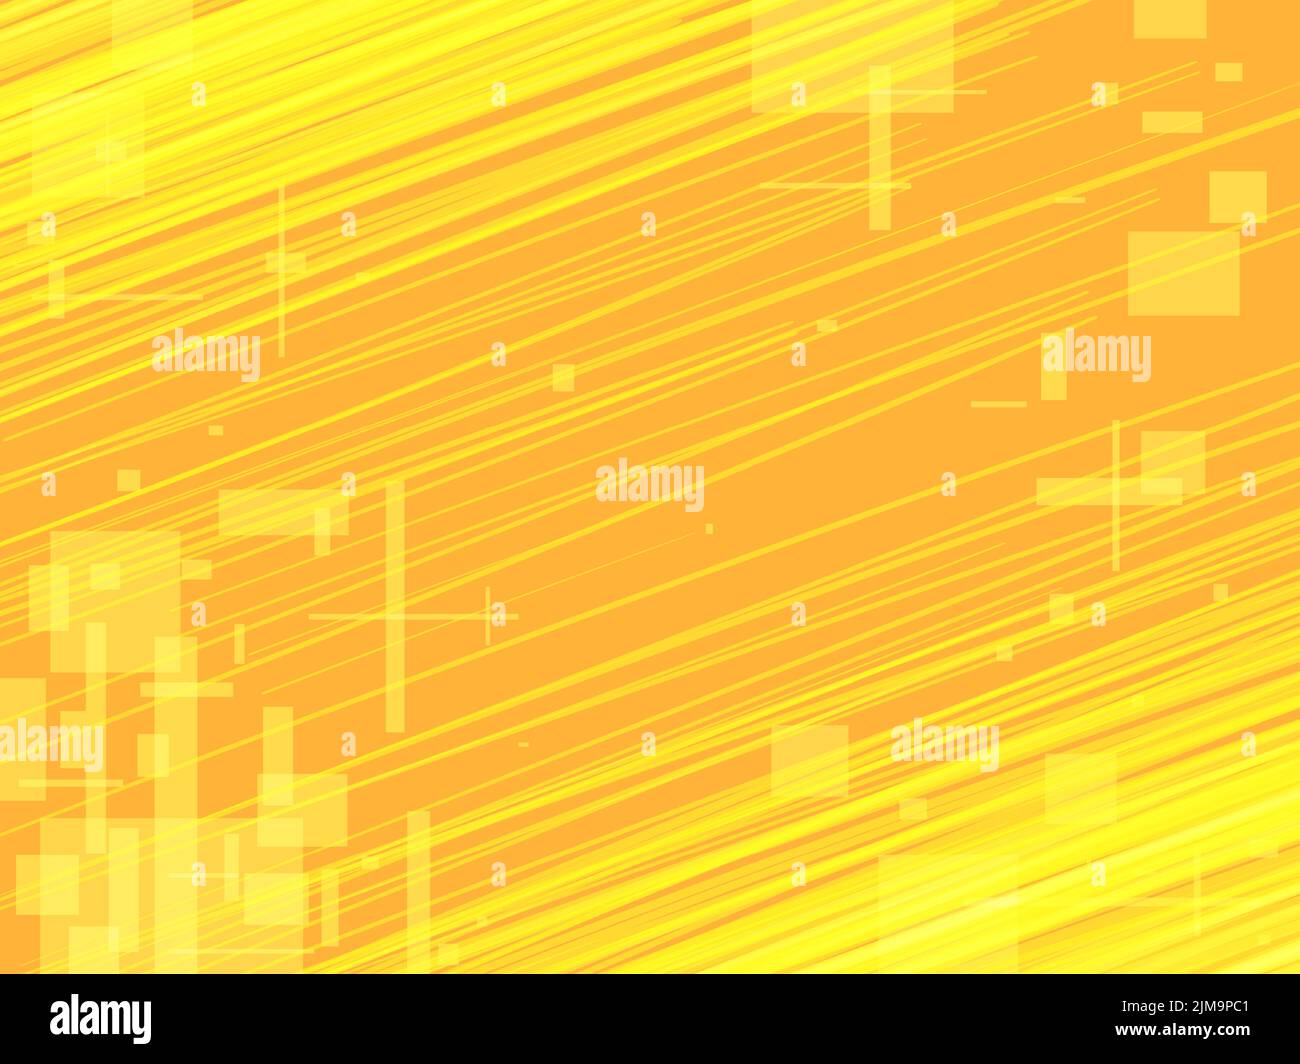 fondo amarillo anaranjado scratch, arte pop abstracto, rayas Ilustración del Vector